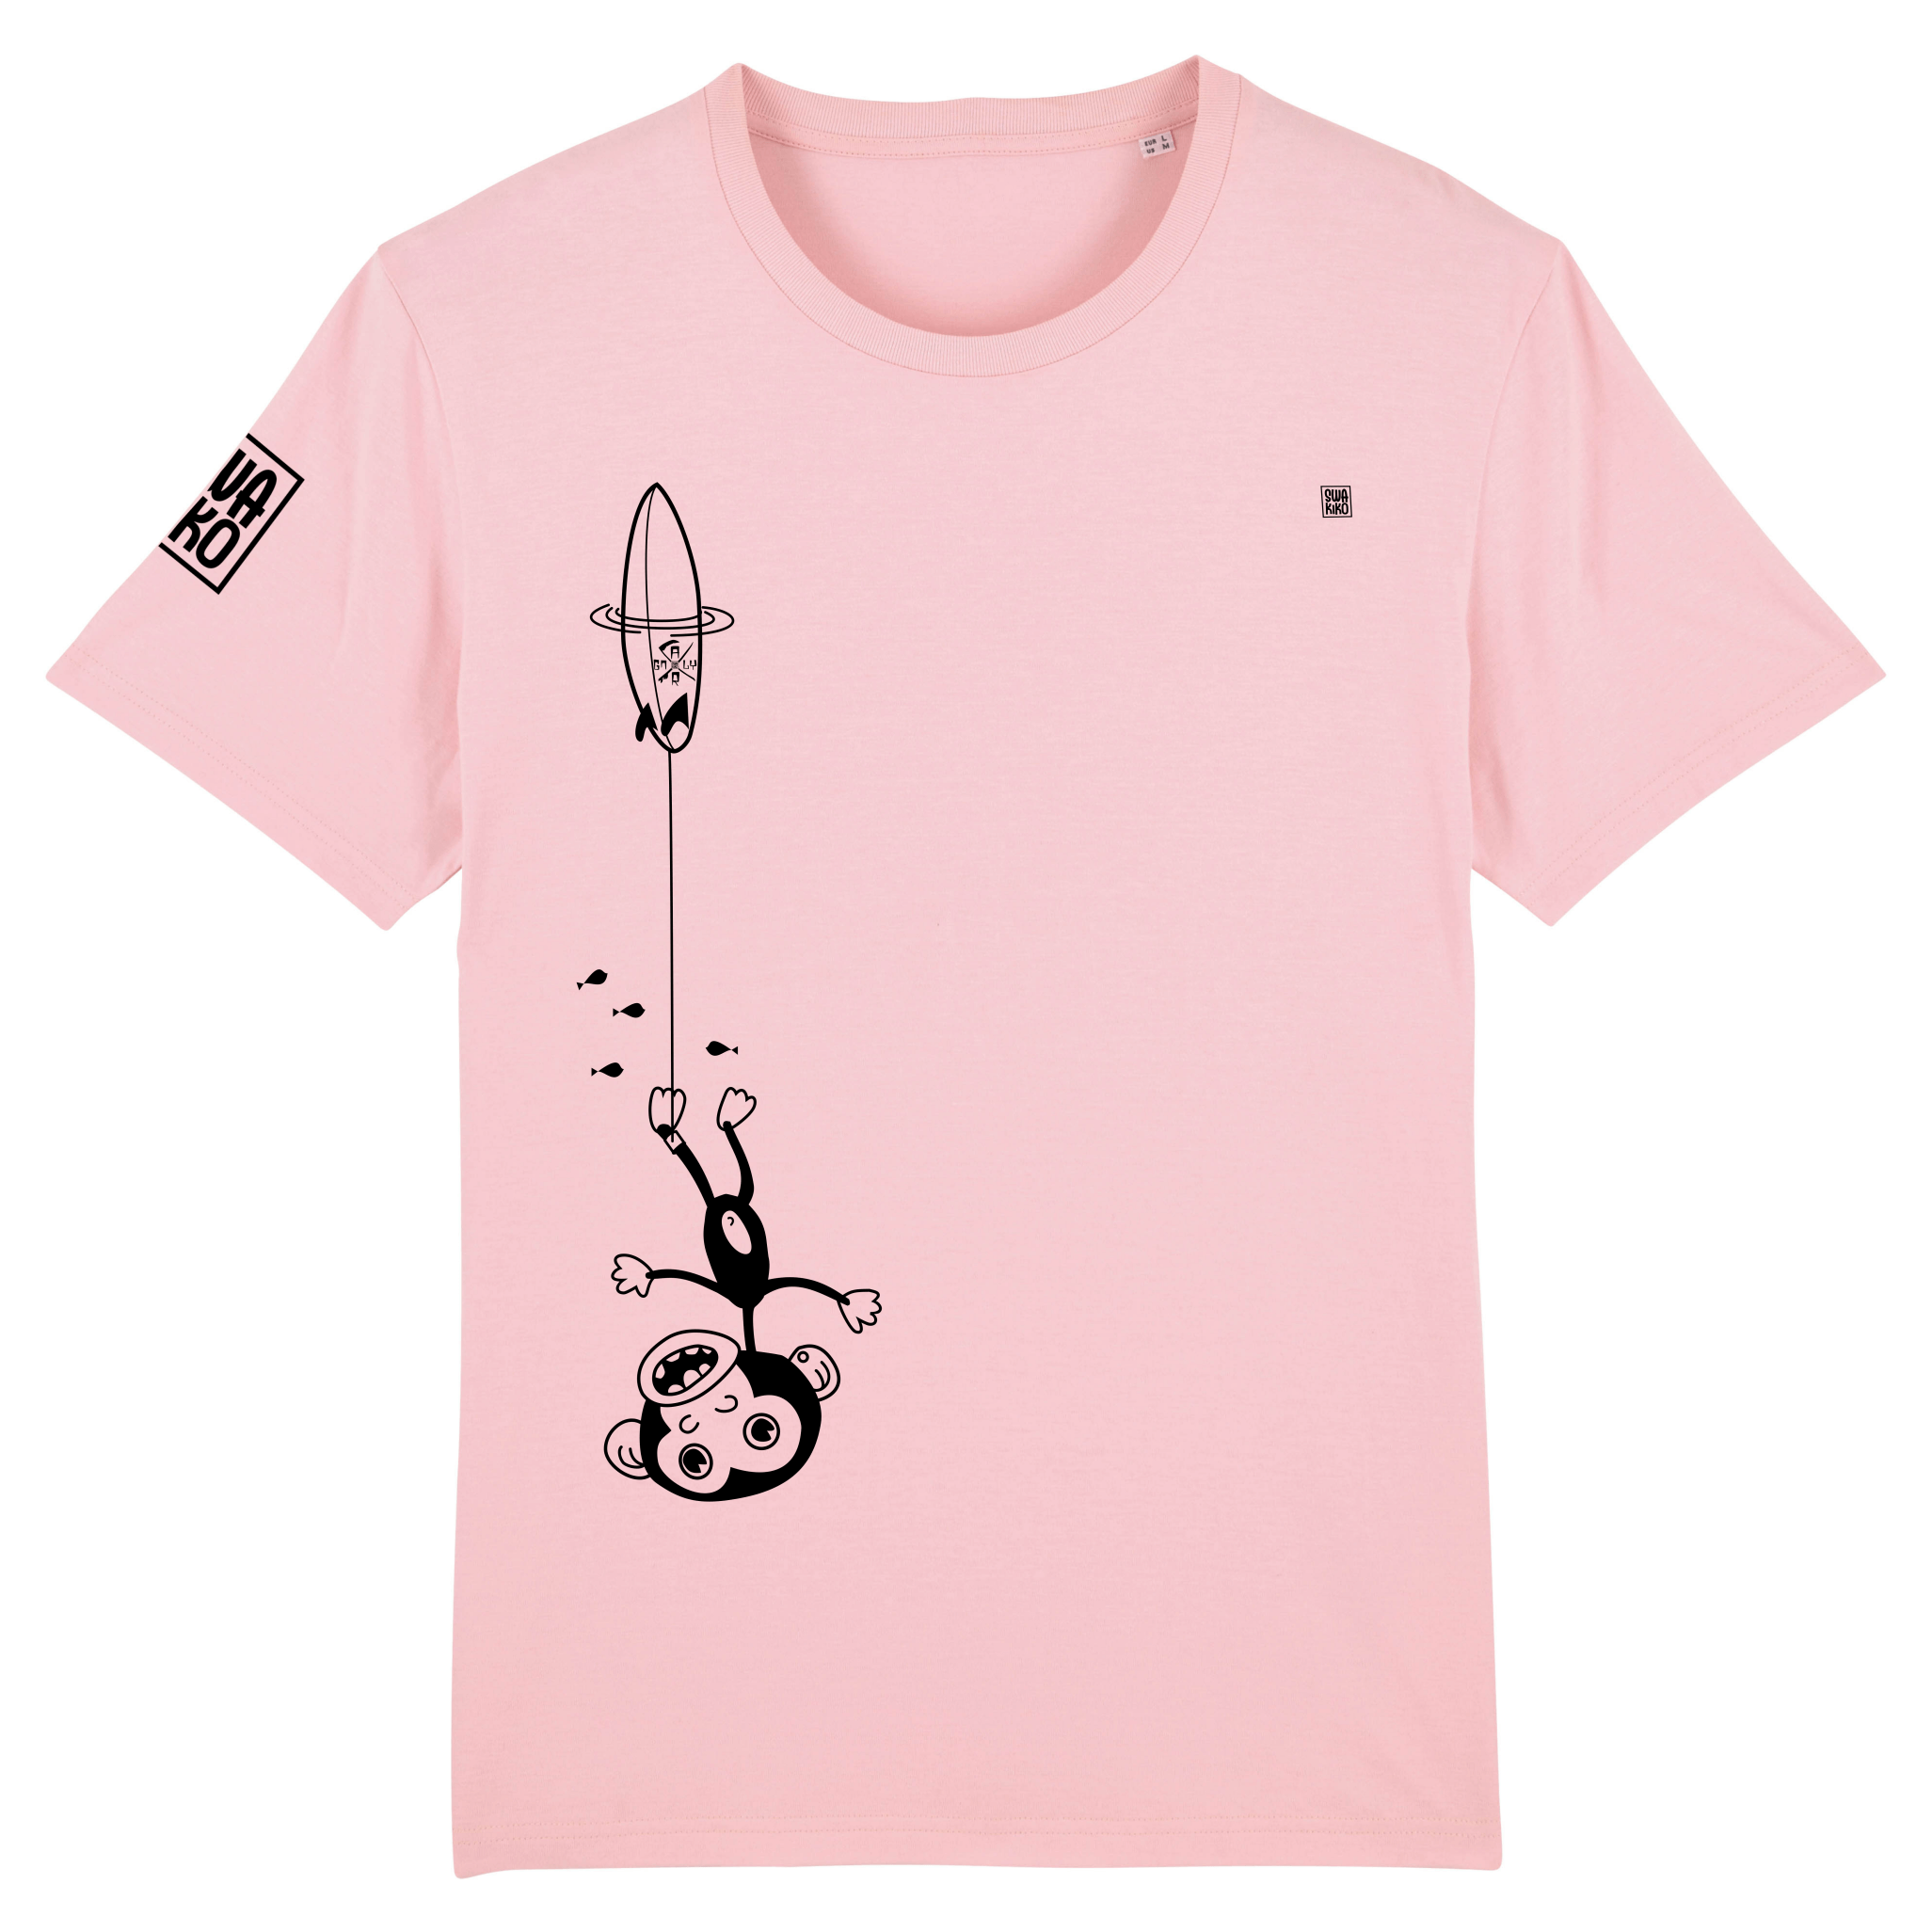 Grappig roze surf T-shirt: Ondersteboven hangende aap aan surfboard, gepakt door golf - Hilarisch design 